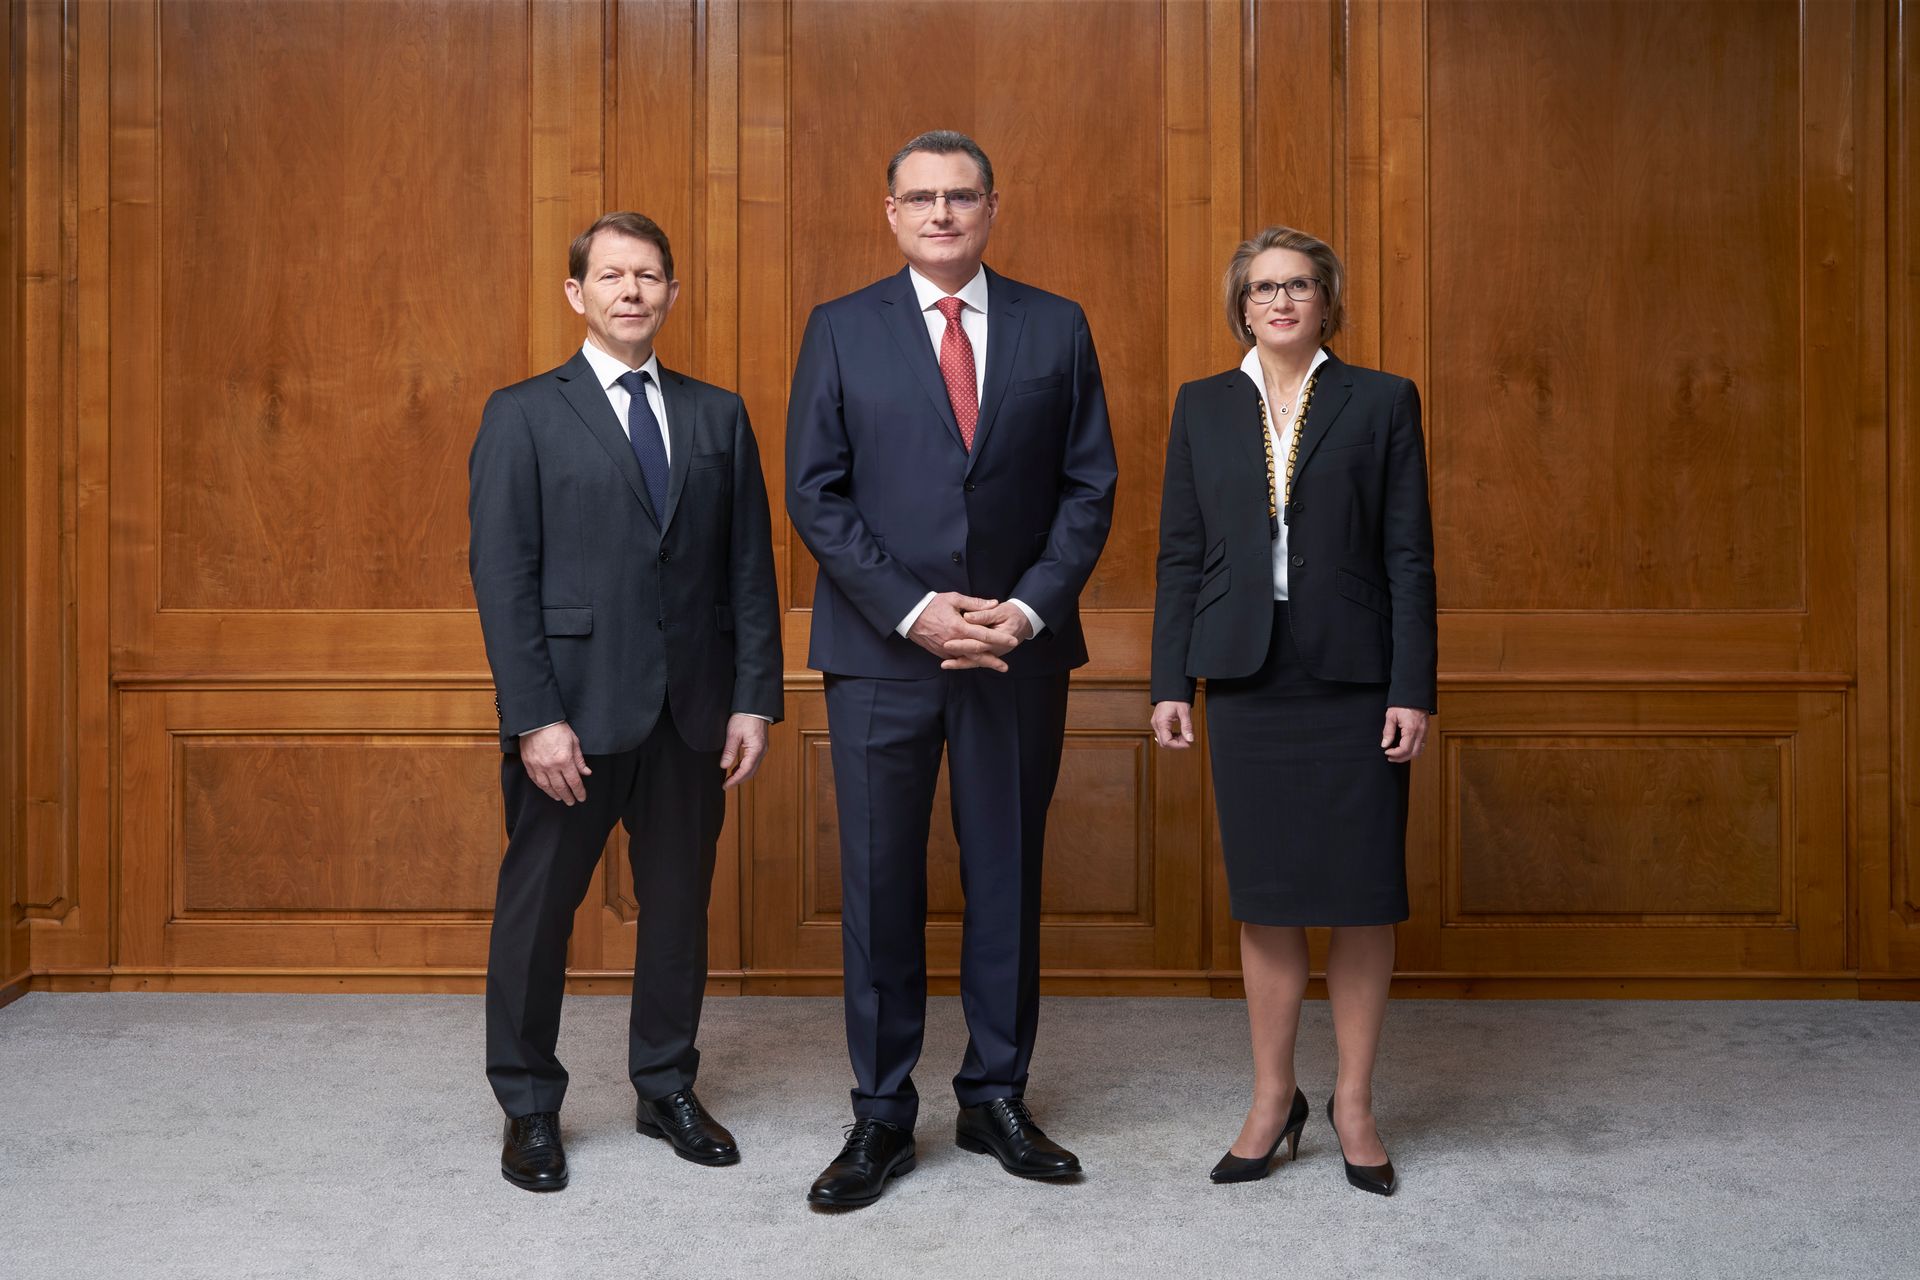 Izvršni odbor Švicarske nacionalne banke (Fritz Zurbrügg, Thomas Jordan i Andréa Michaela Maechler)